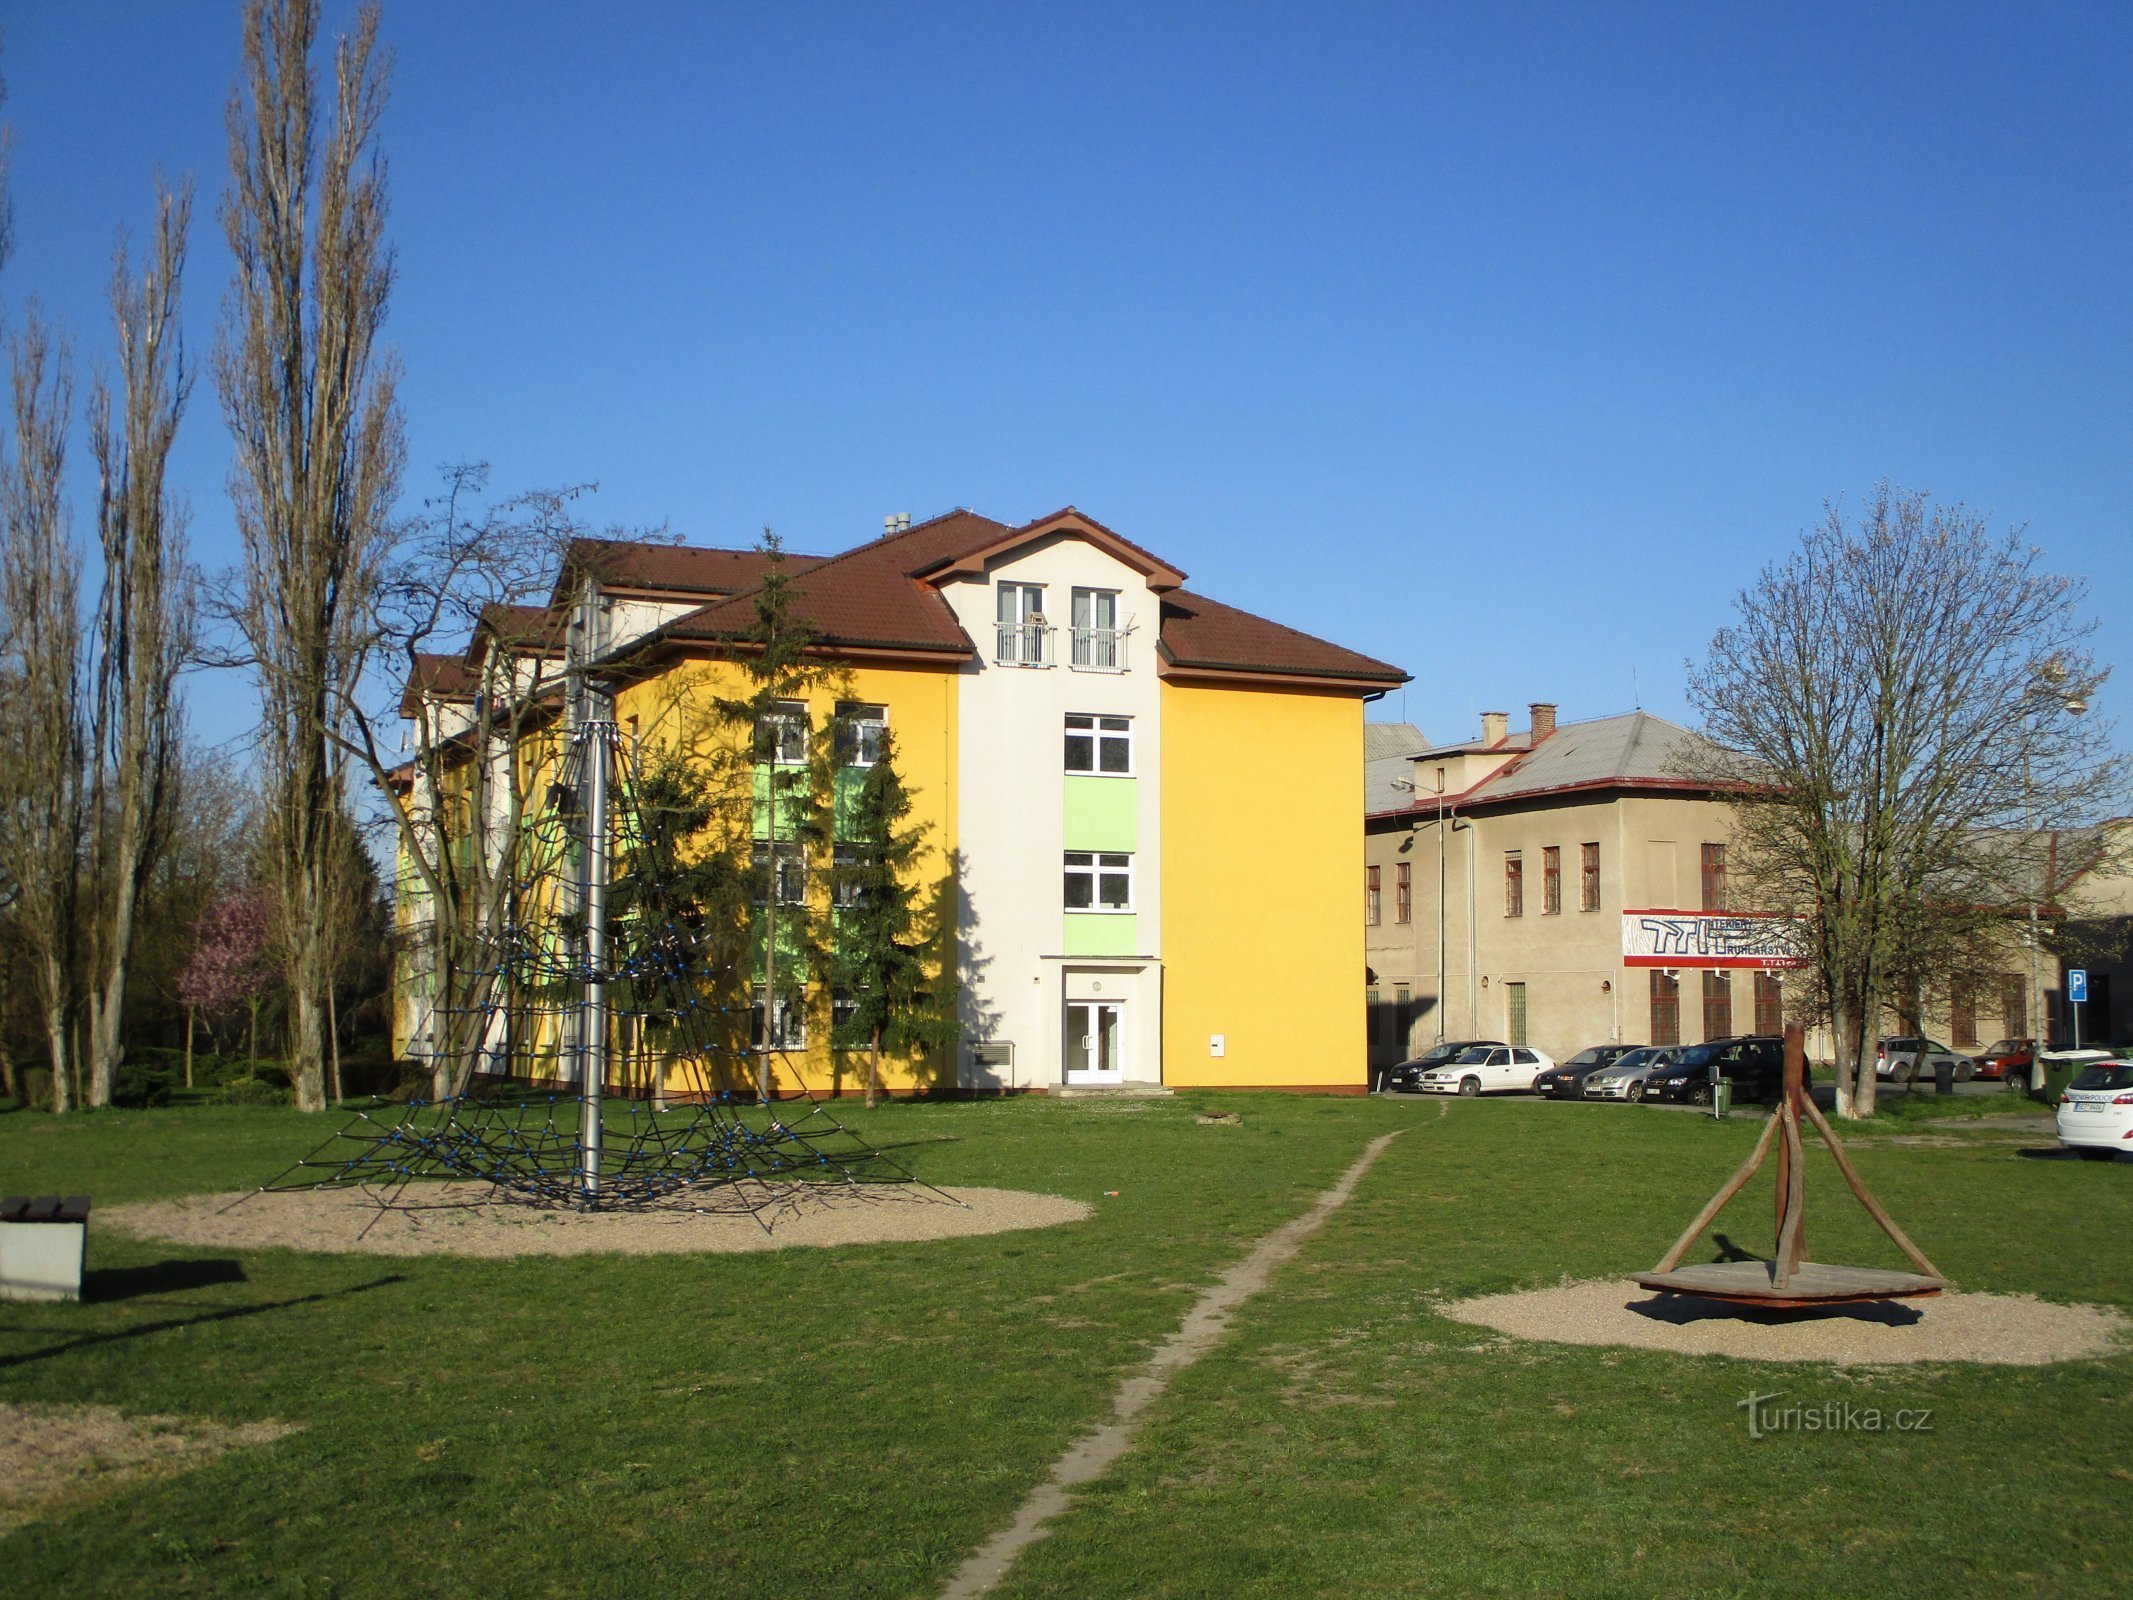 Gelände der ehemaligen Zuckerfabrik (Opatovice nad Labem, 12.4.2020. April XNUMX)